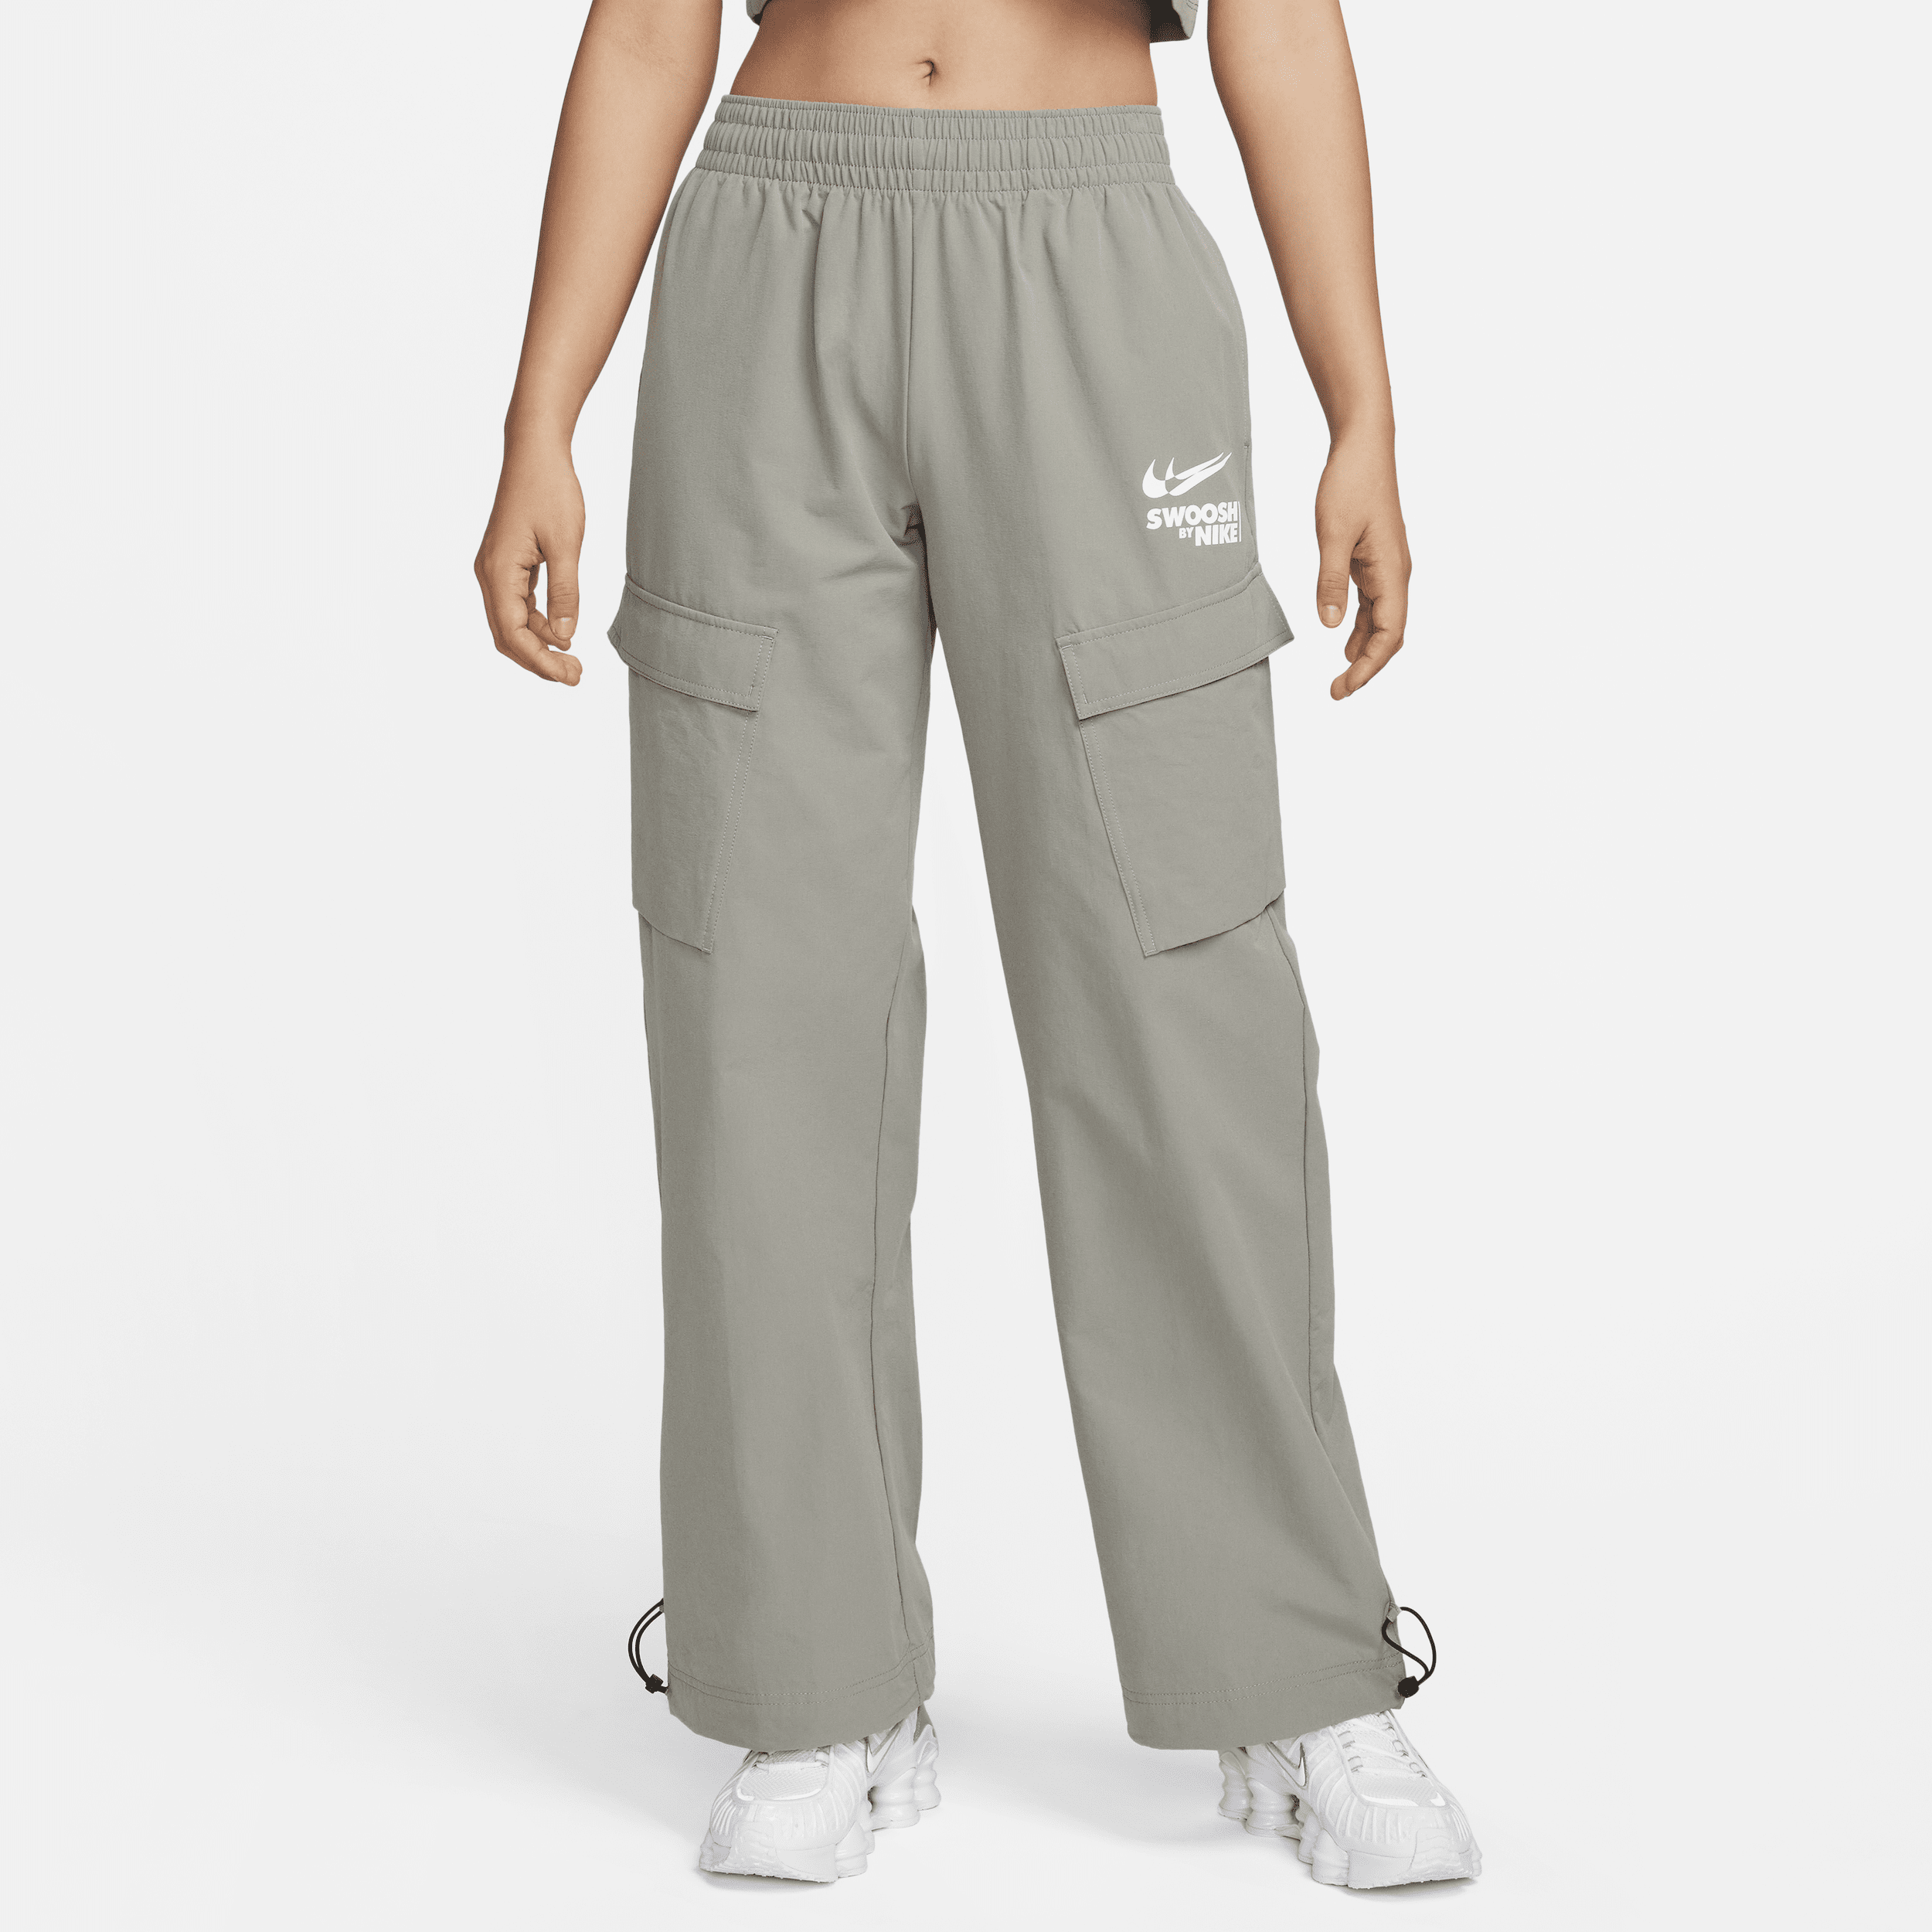 Vævede Nike Sportswear-cargo-bukser til kvinder - grå